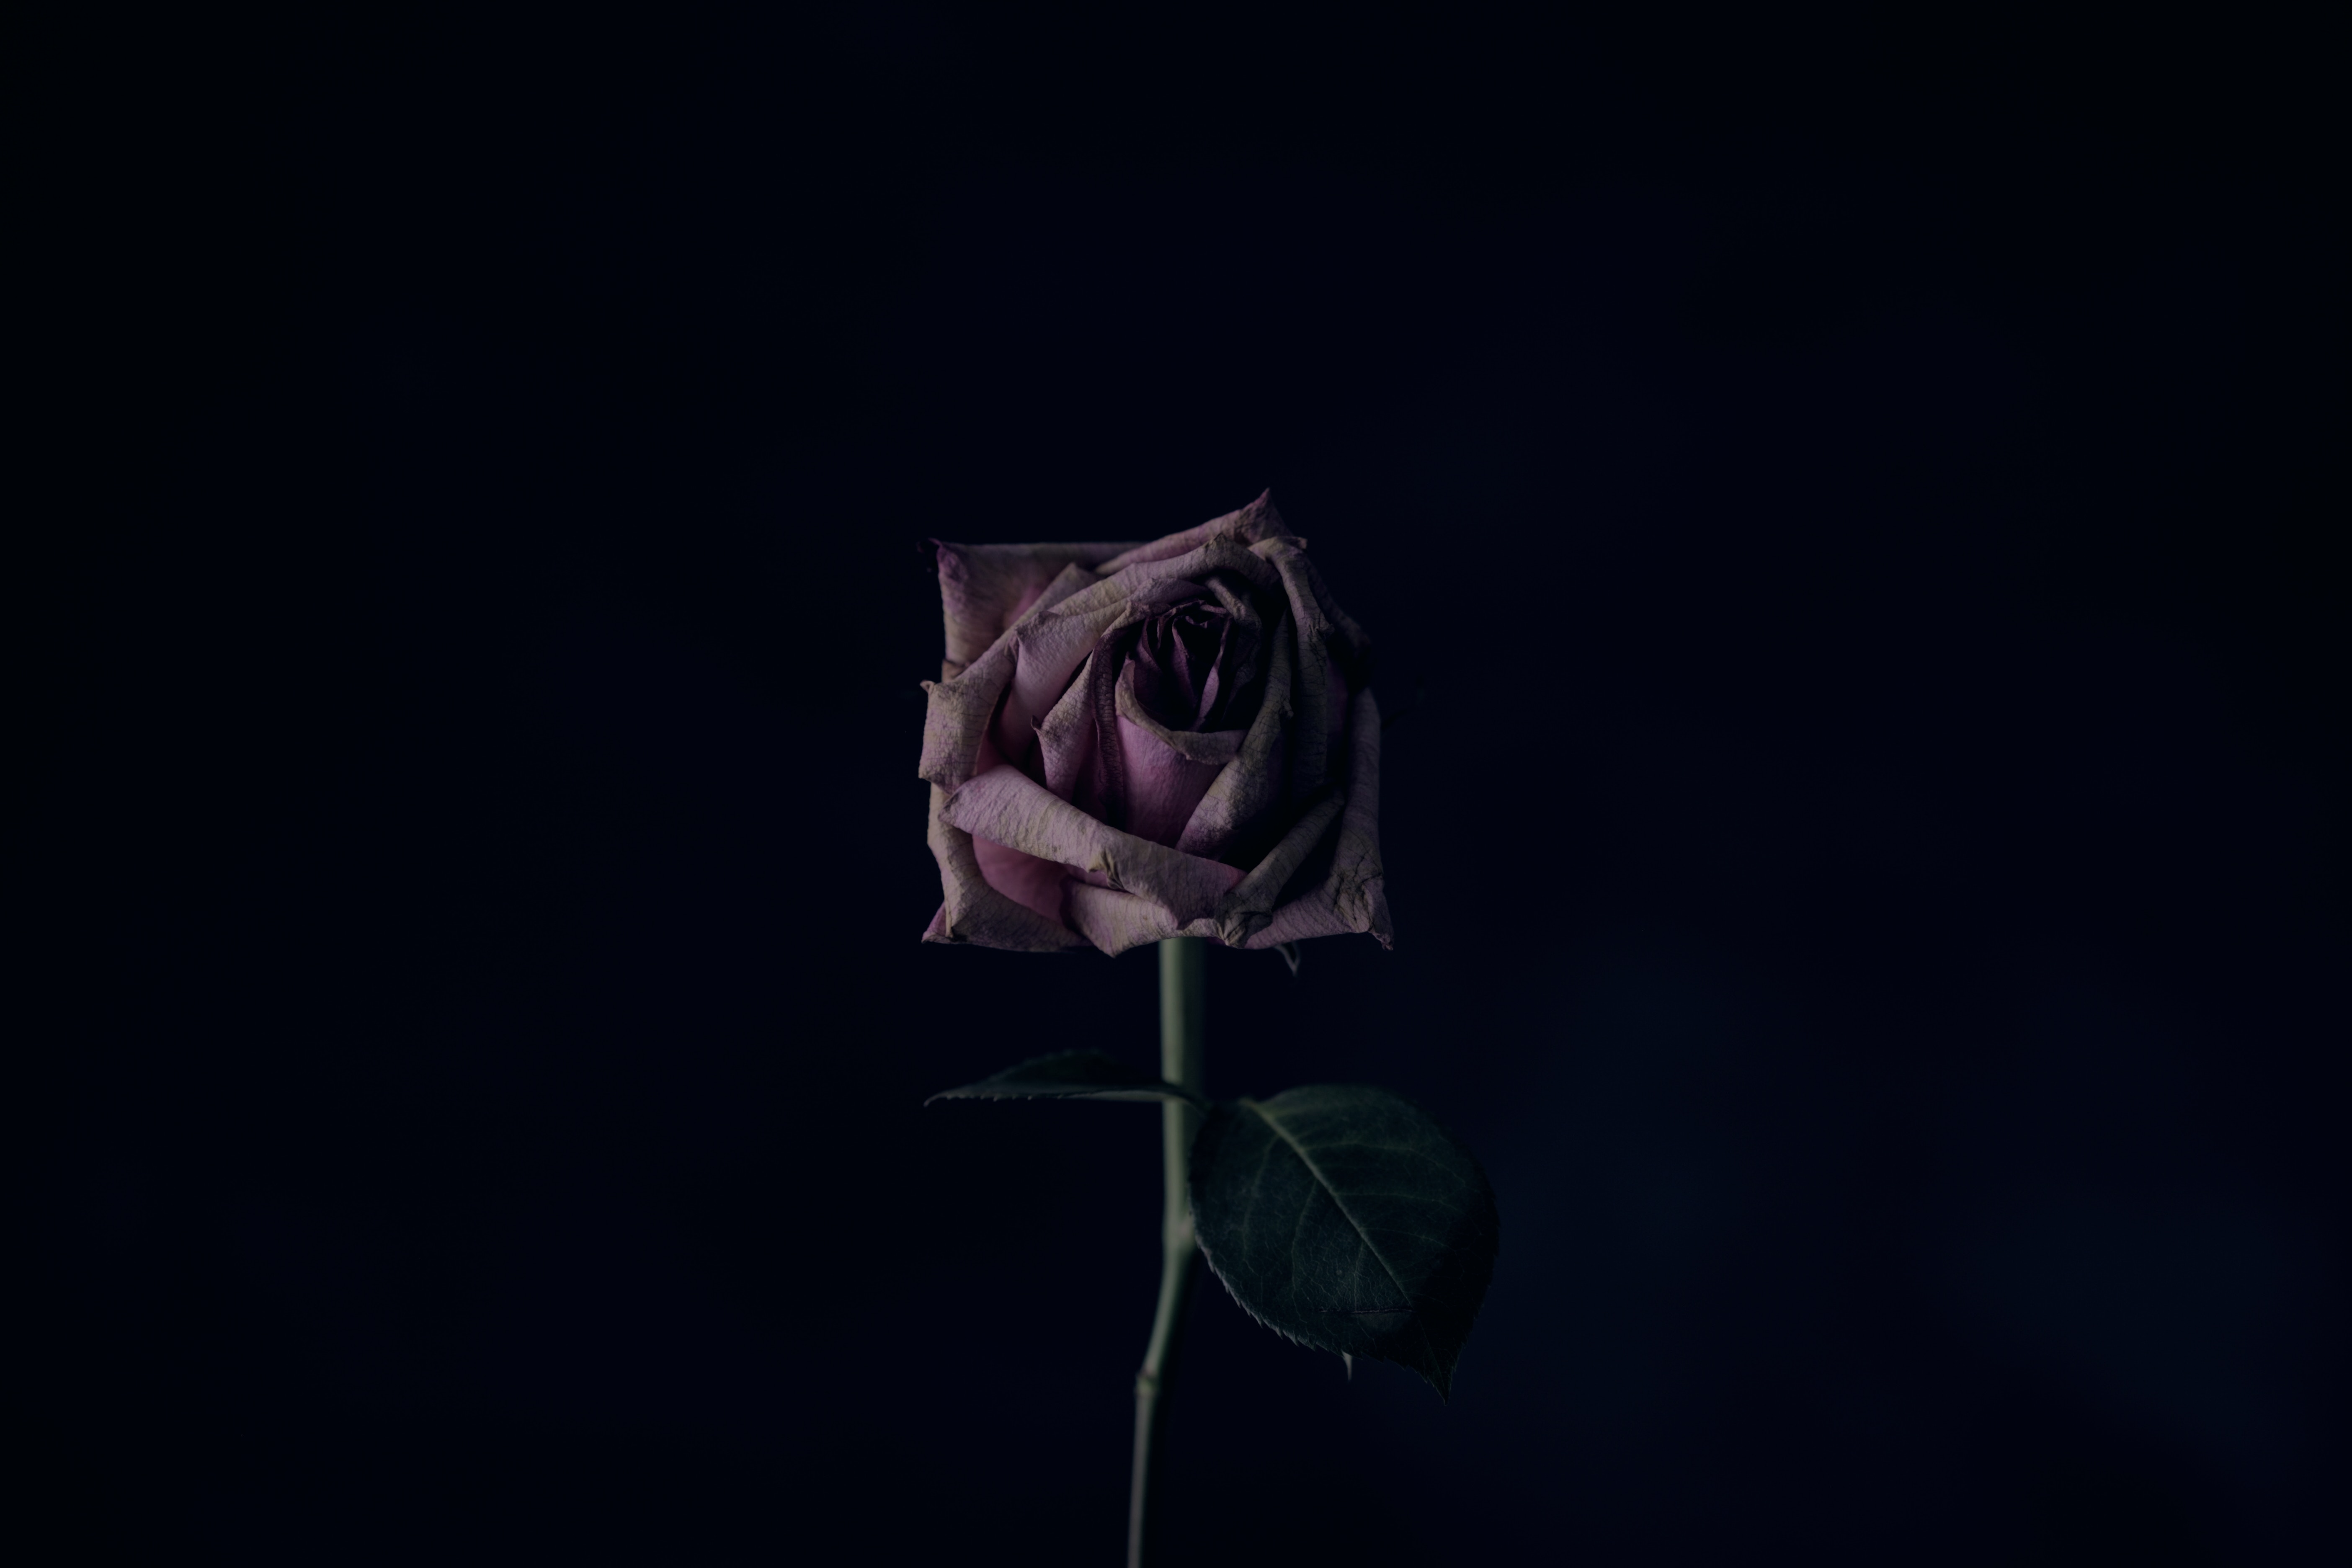 black background, rose, bud, rose flower, flower, dark High Definition image